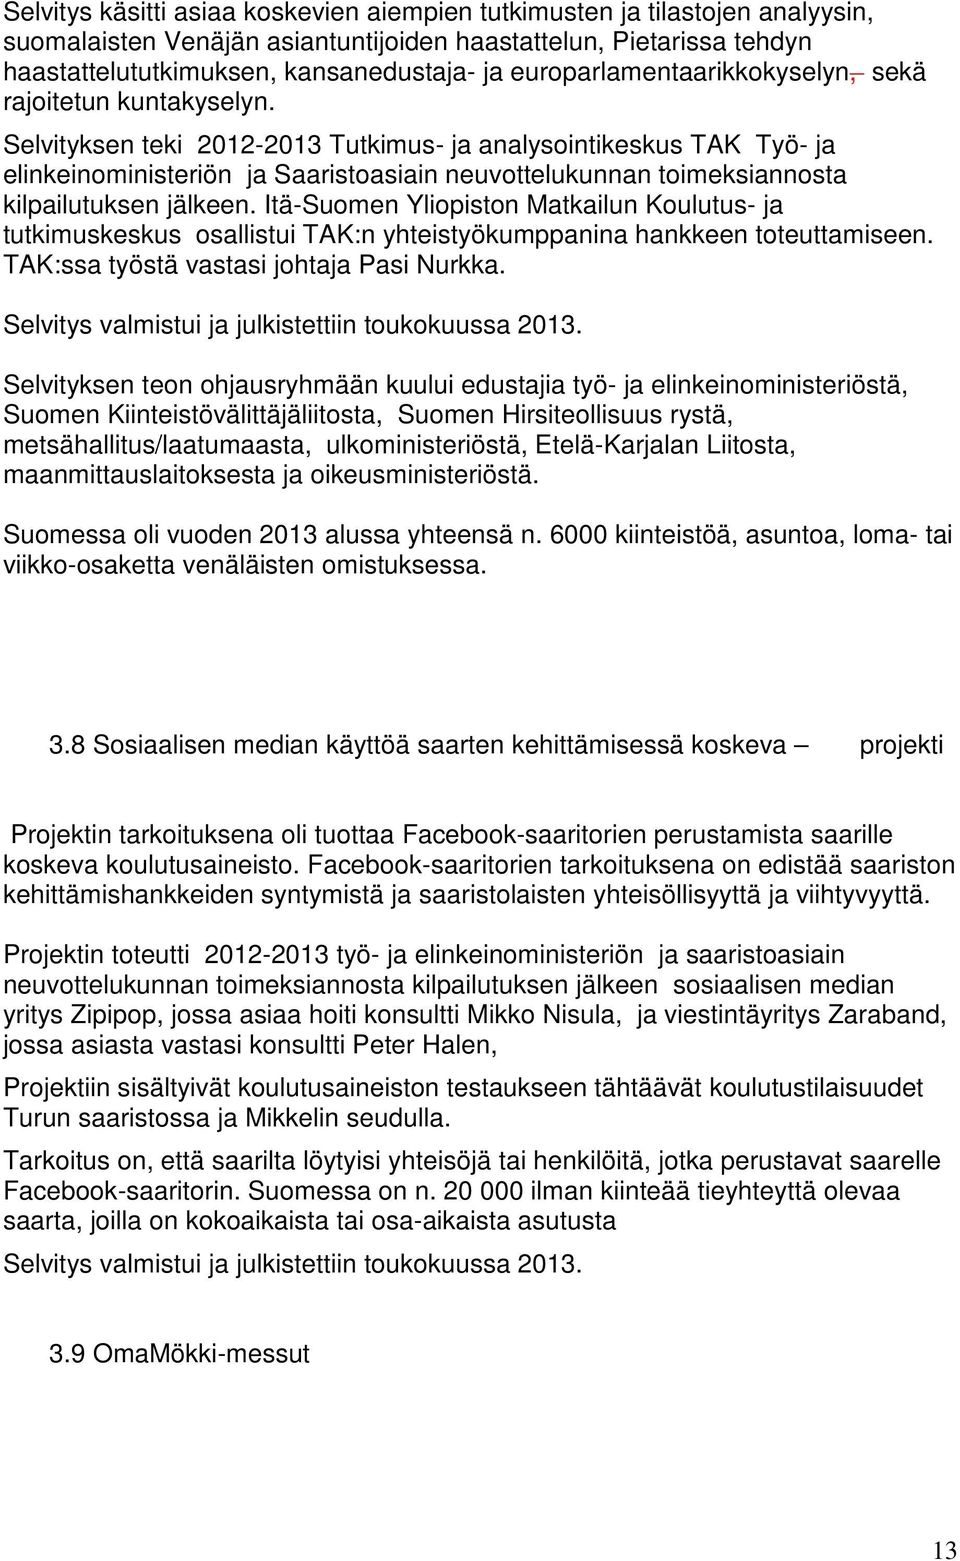 Selvityksen teki 2012-2013 Tutkimus- ja analysointikeskus TAK Työ- ja elinkeinoministeriön ja Saaristoasiain neuvottelukunnan toimeksiannosta kilpailutuksen jälkeen.